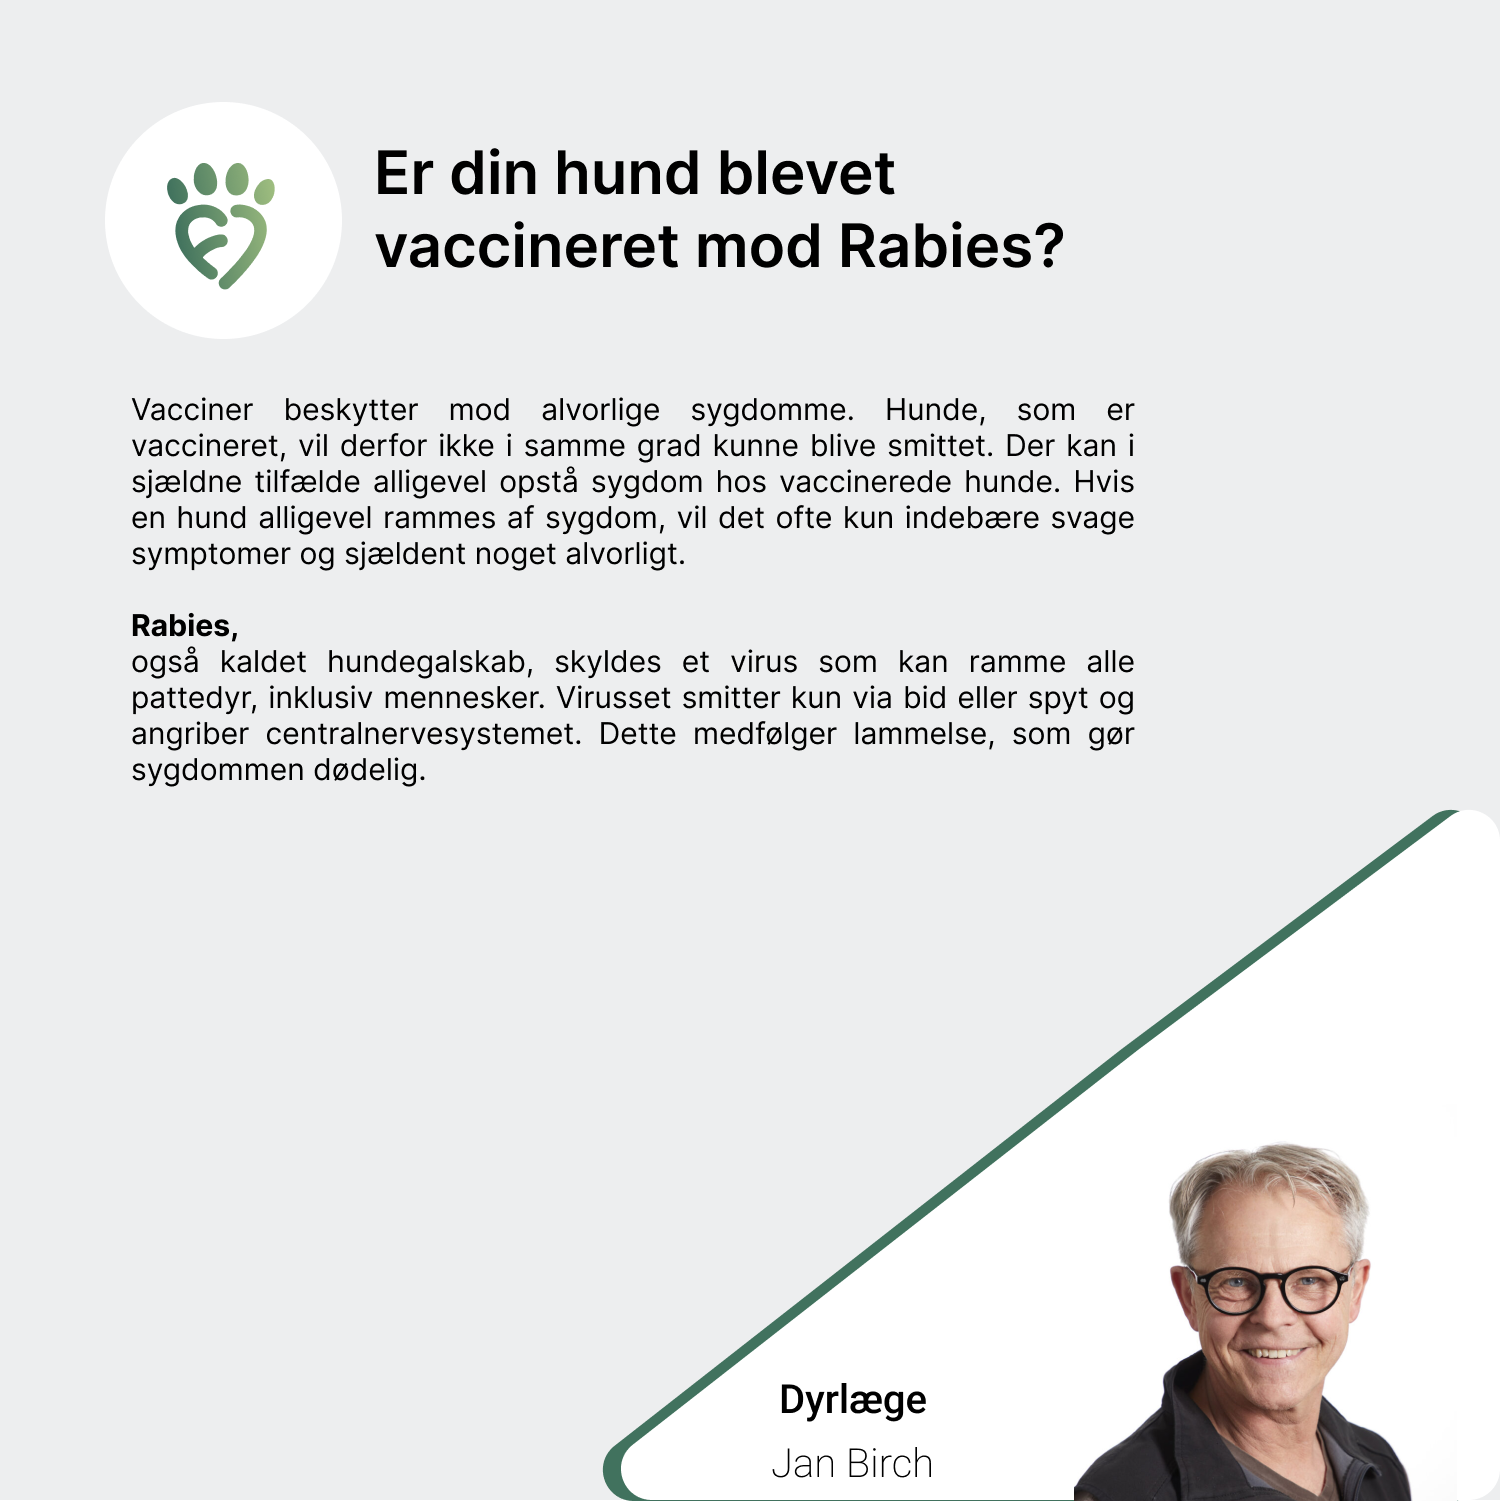 Er din hund blevet vaccineret mod Rabies_